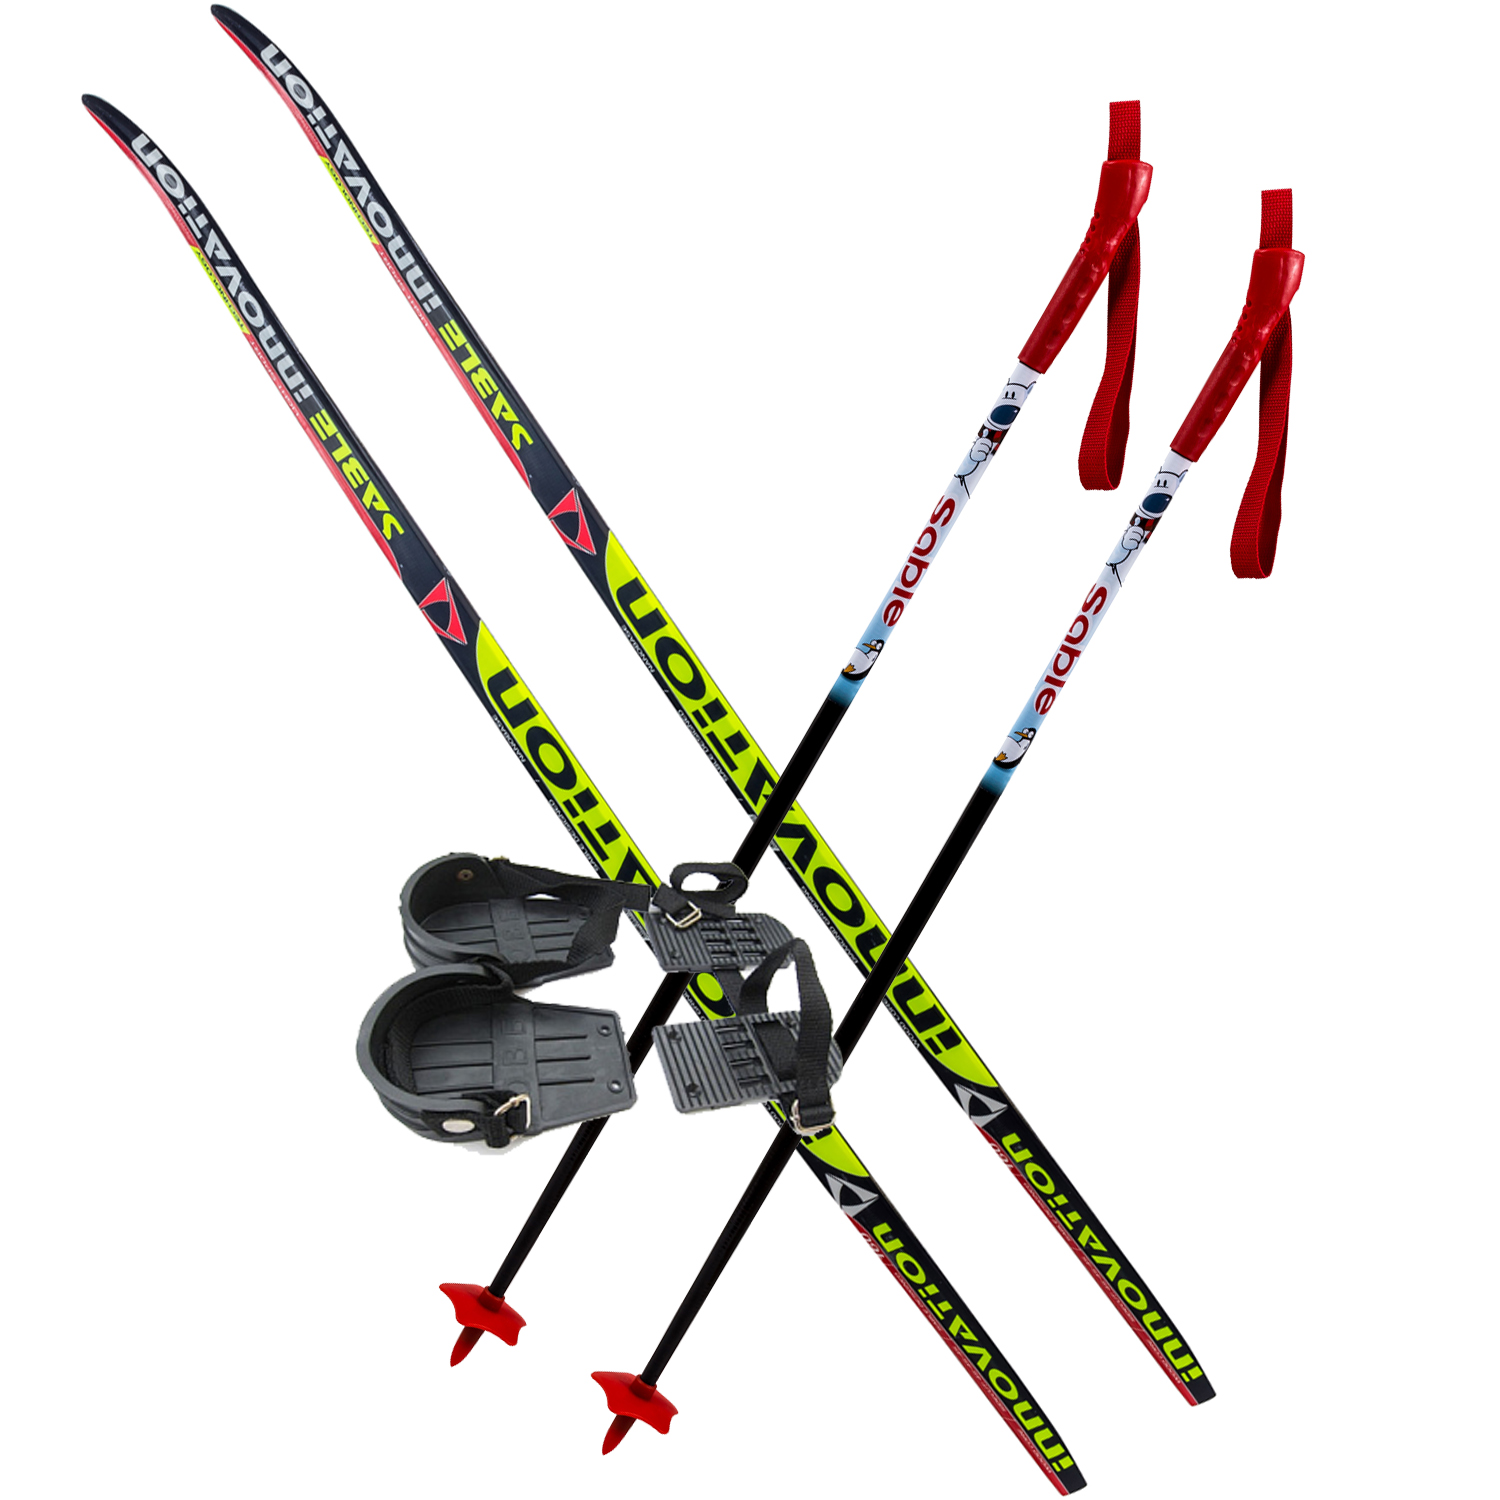 Купить лыжи с ботинками взрослые. STC держатель STC для лыжных наборов (лыжи+палки), синий. STC лыжи ESP-20094. Лыжные палки STC Sport. Лыжный комплект полупластиковый STC (лыжи, NNN крепления, палки) 180 см.